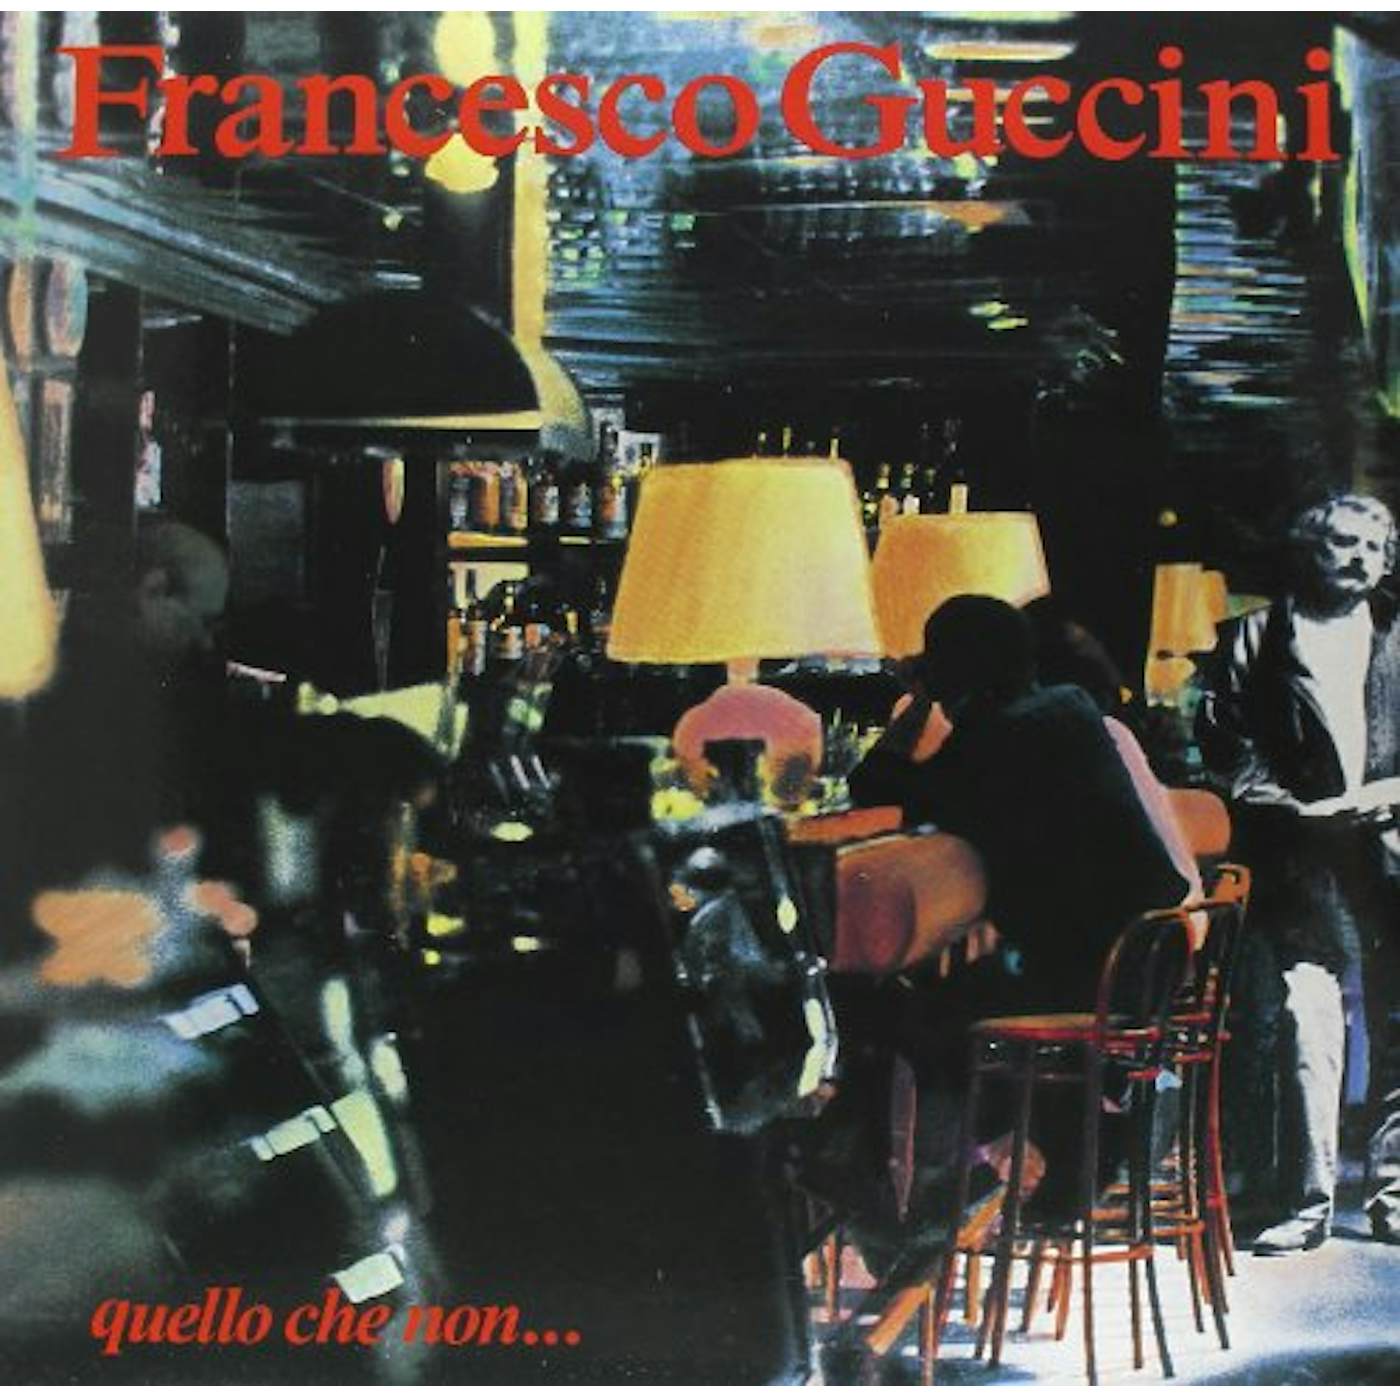 Francesco Guccini QUELLO CHE NON Vinyl Record